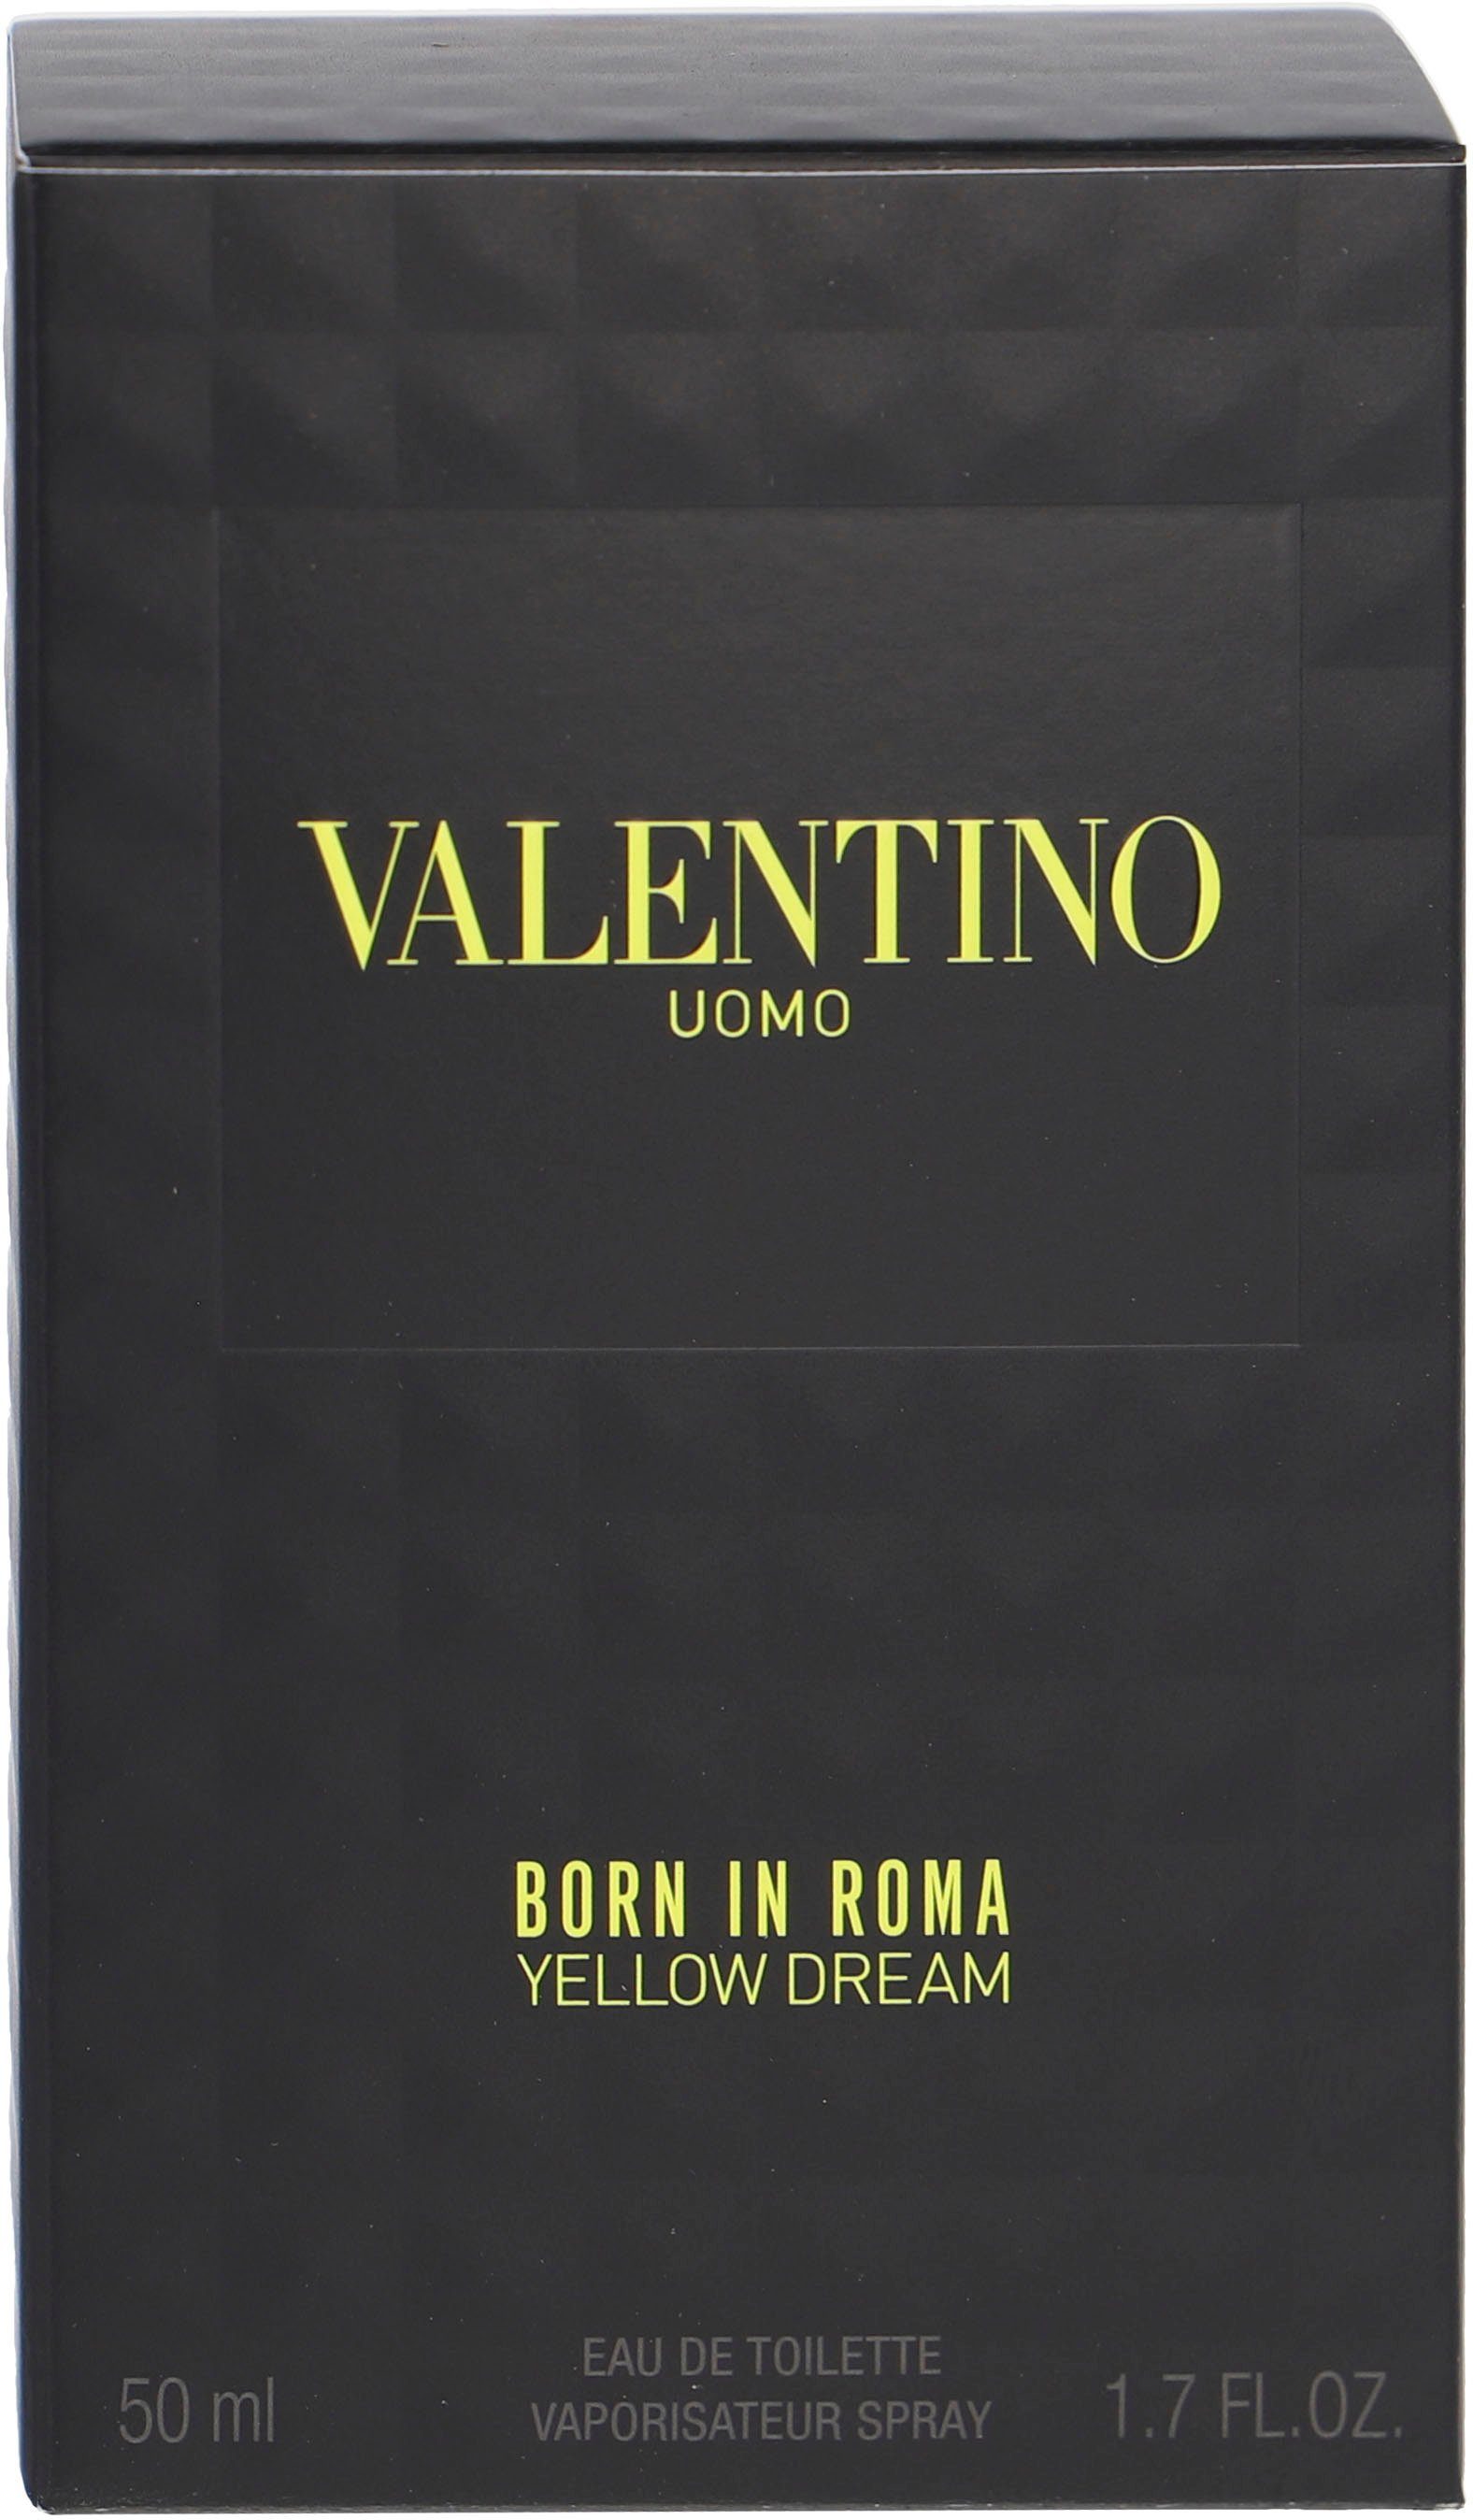 Eau Toilette Valentino Born In Uomo Yellow de Roma Dream